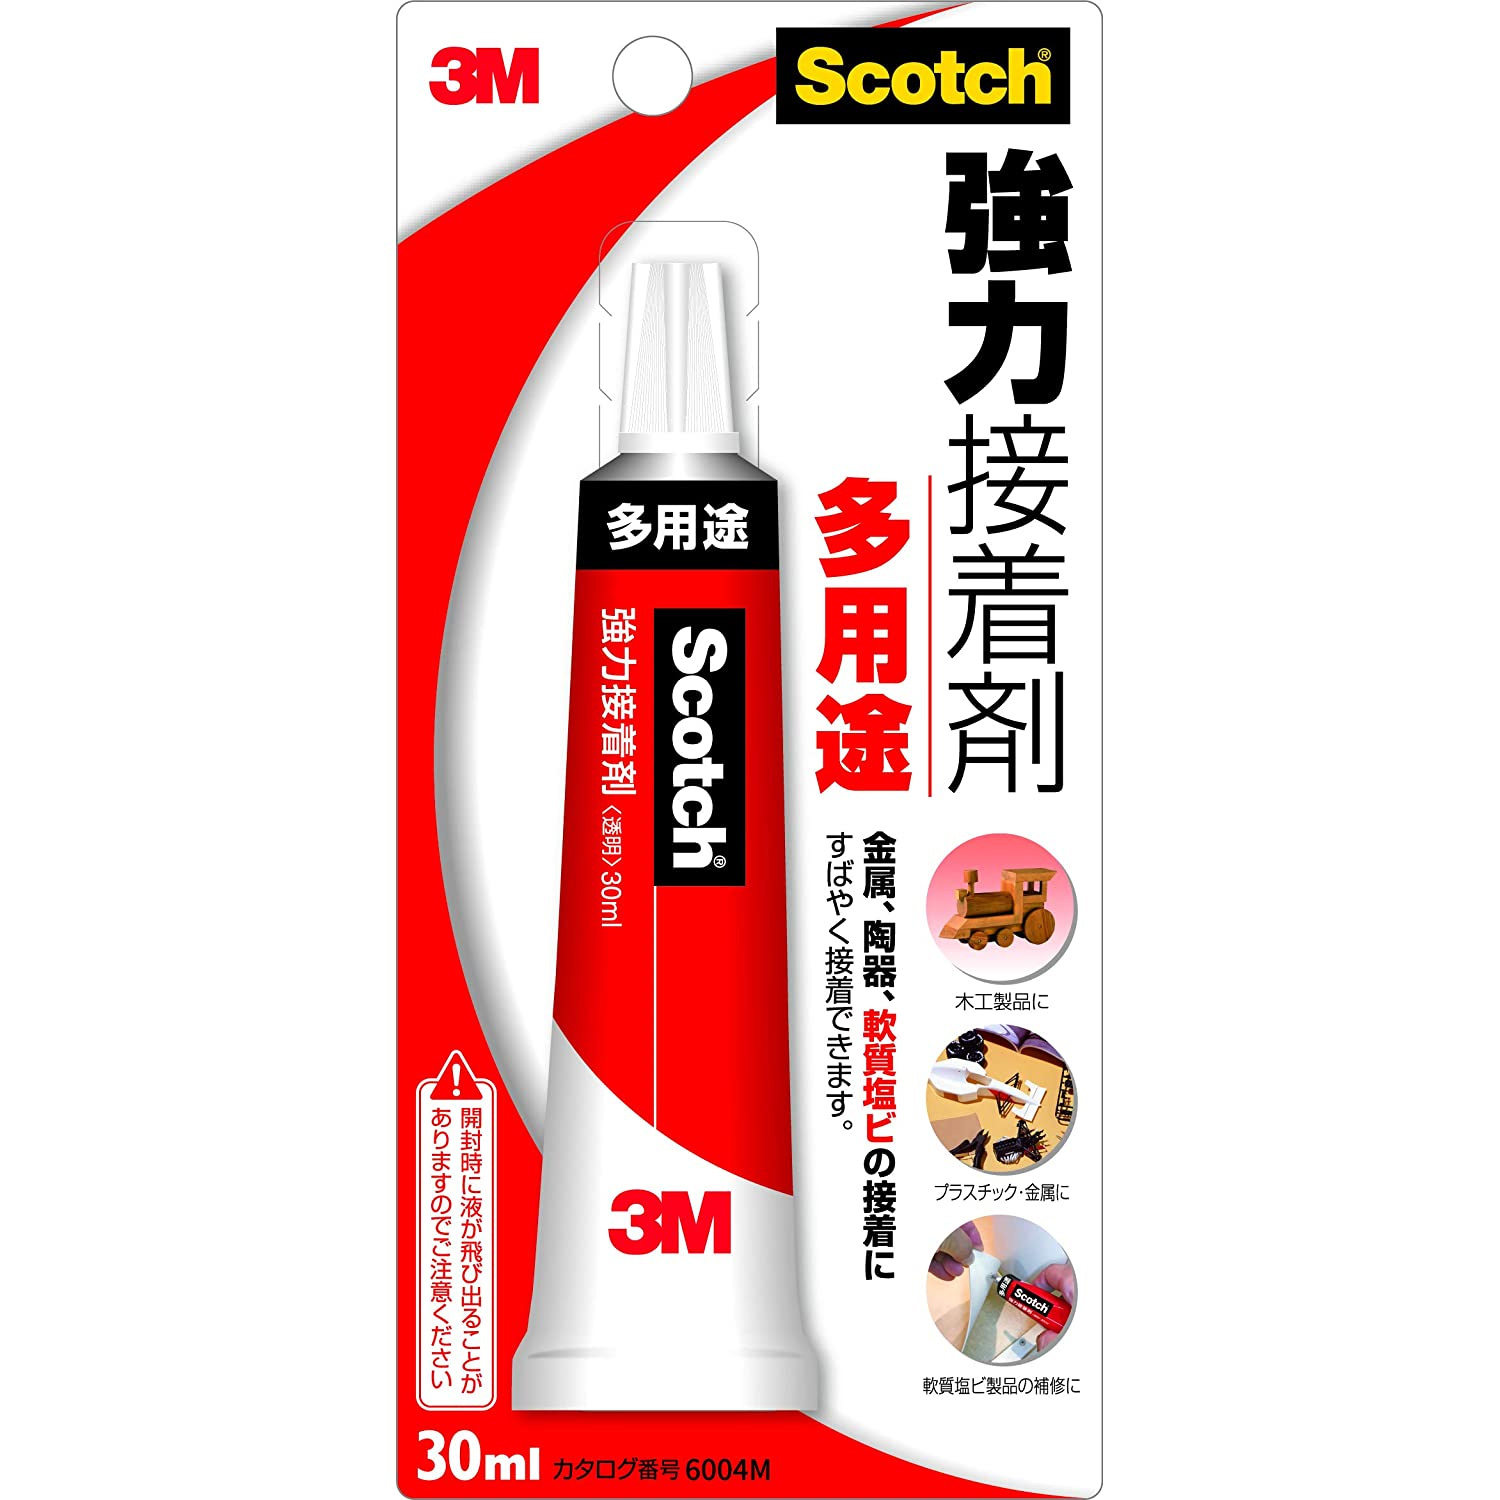 3M-6004M Scotch 3M 強力接着剤 多用途 30ml (個)